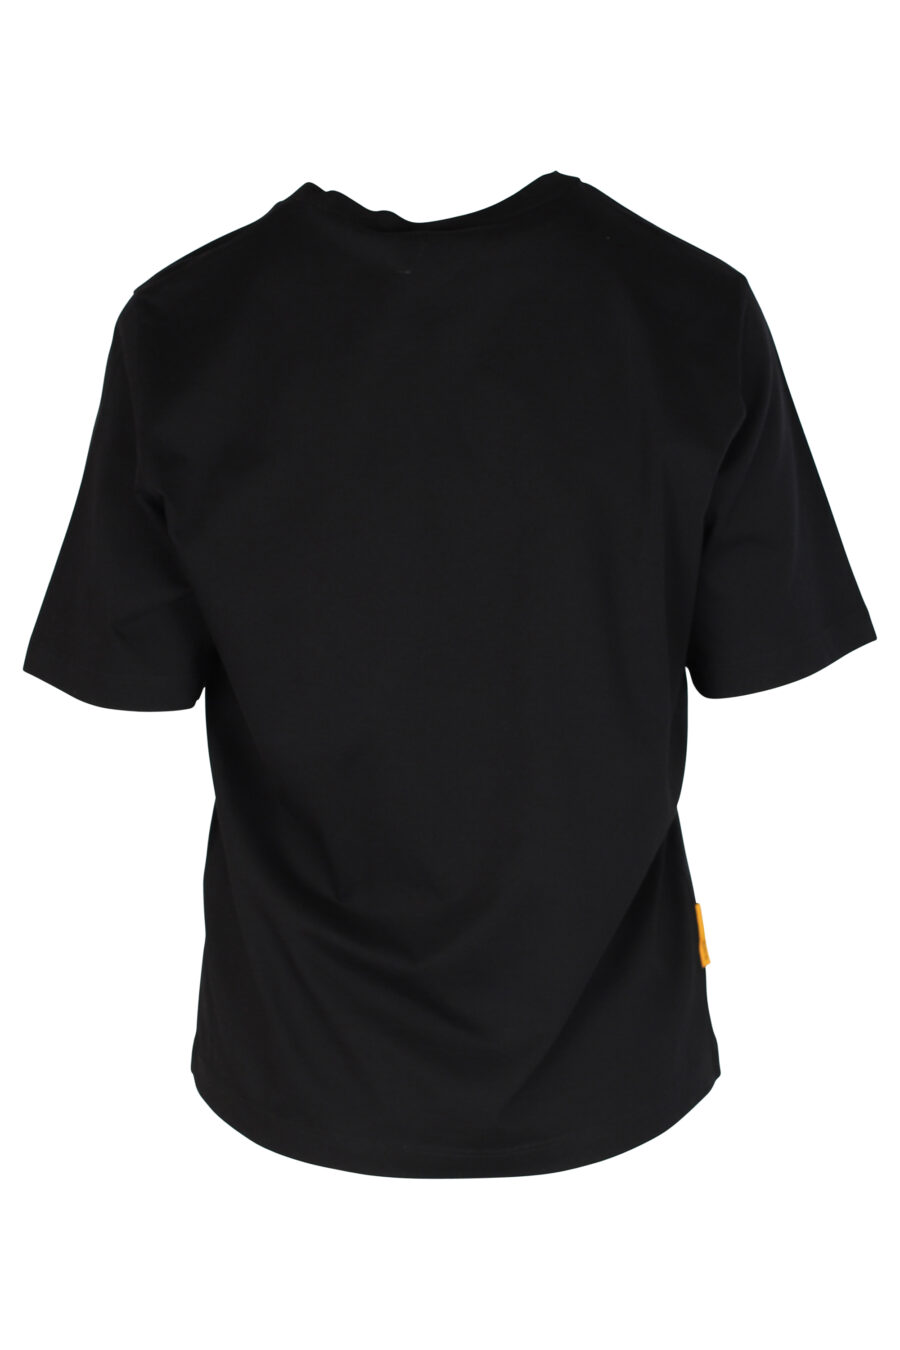 T-shirt preta com o logótipo "Pac-man" - 8054148185558 2